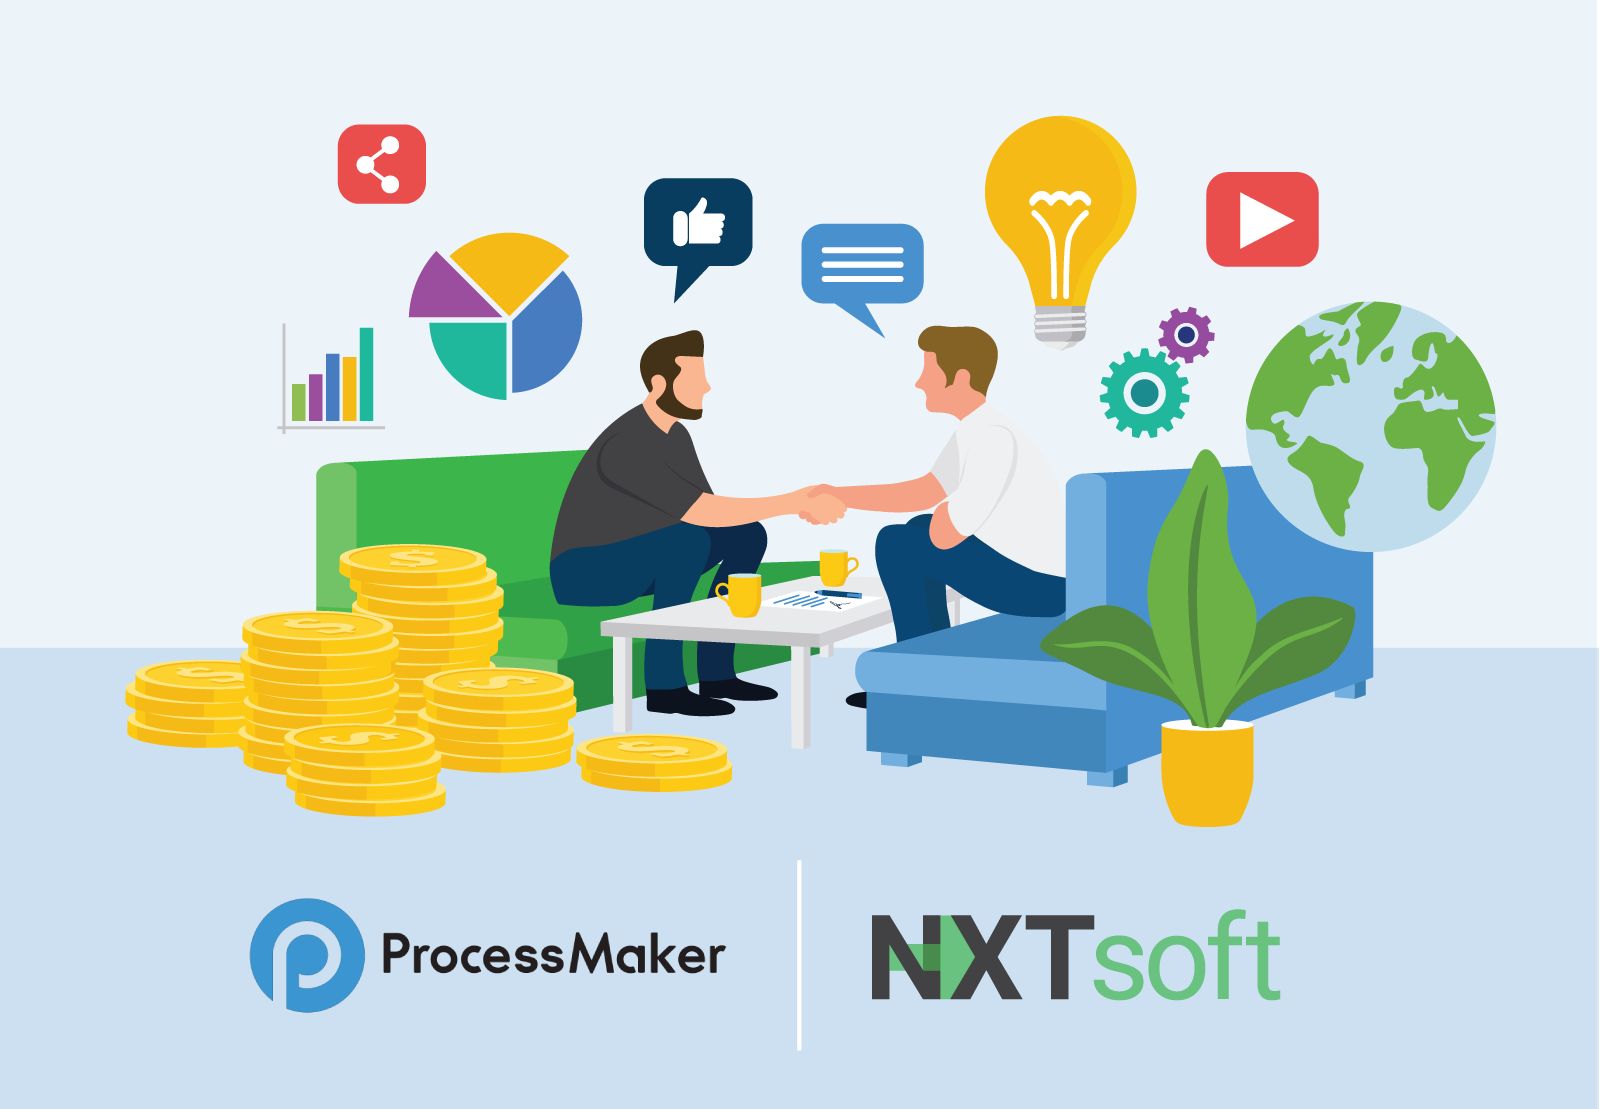 ProcessMaker et NXTsoft annoncent un partenariat stratégique